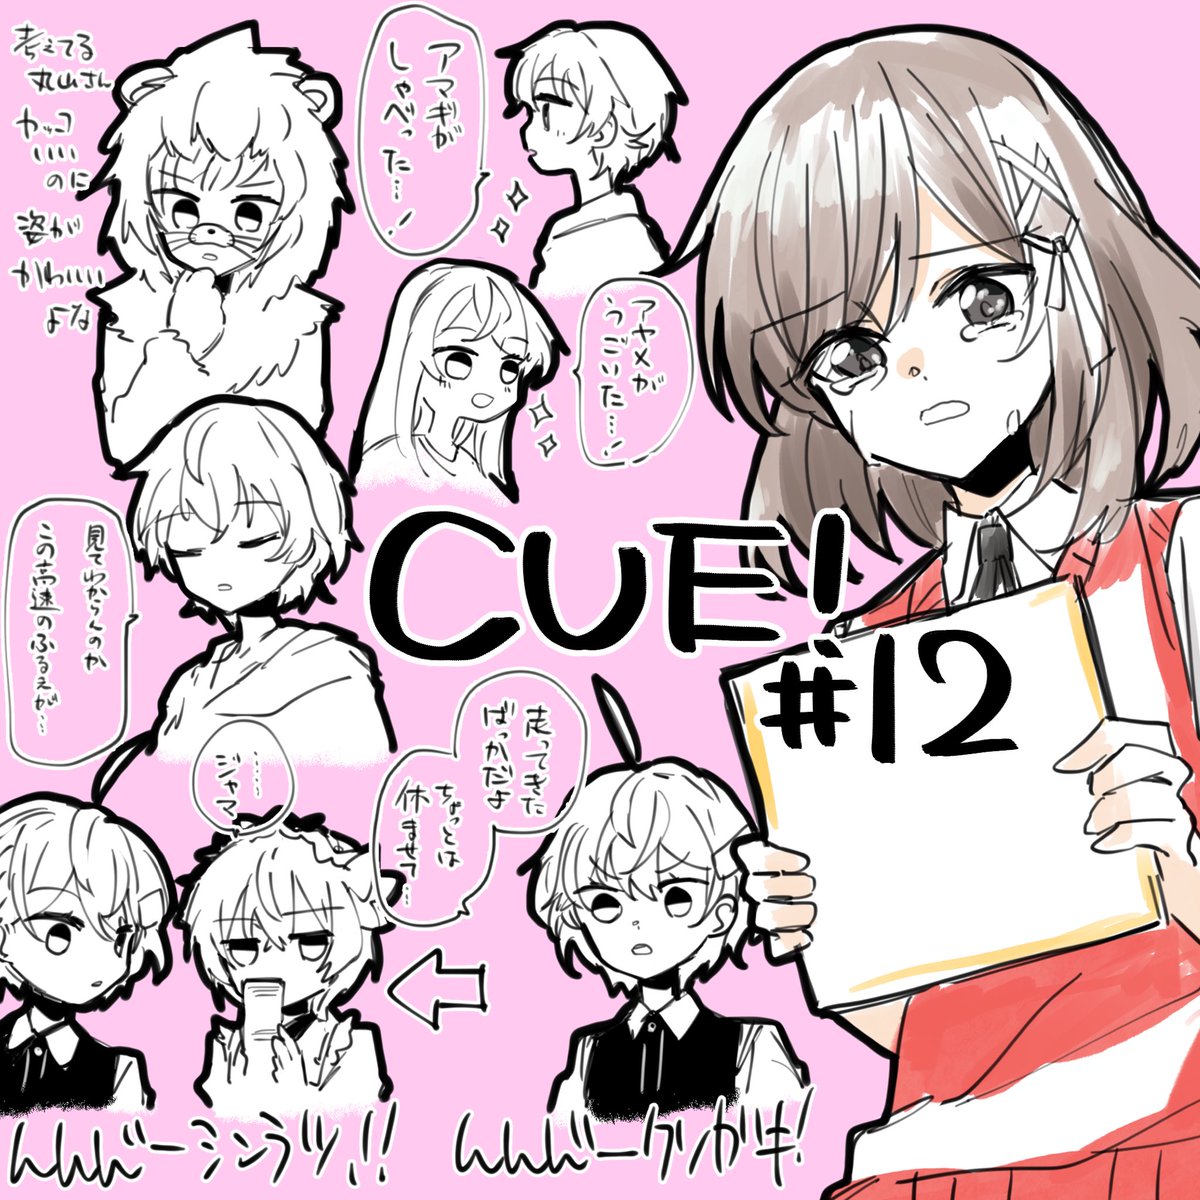 キューくん12話 もうちょっとだけつづくんじゃ
#キュー #cue_anime
#CUEイラスト部 